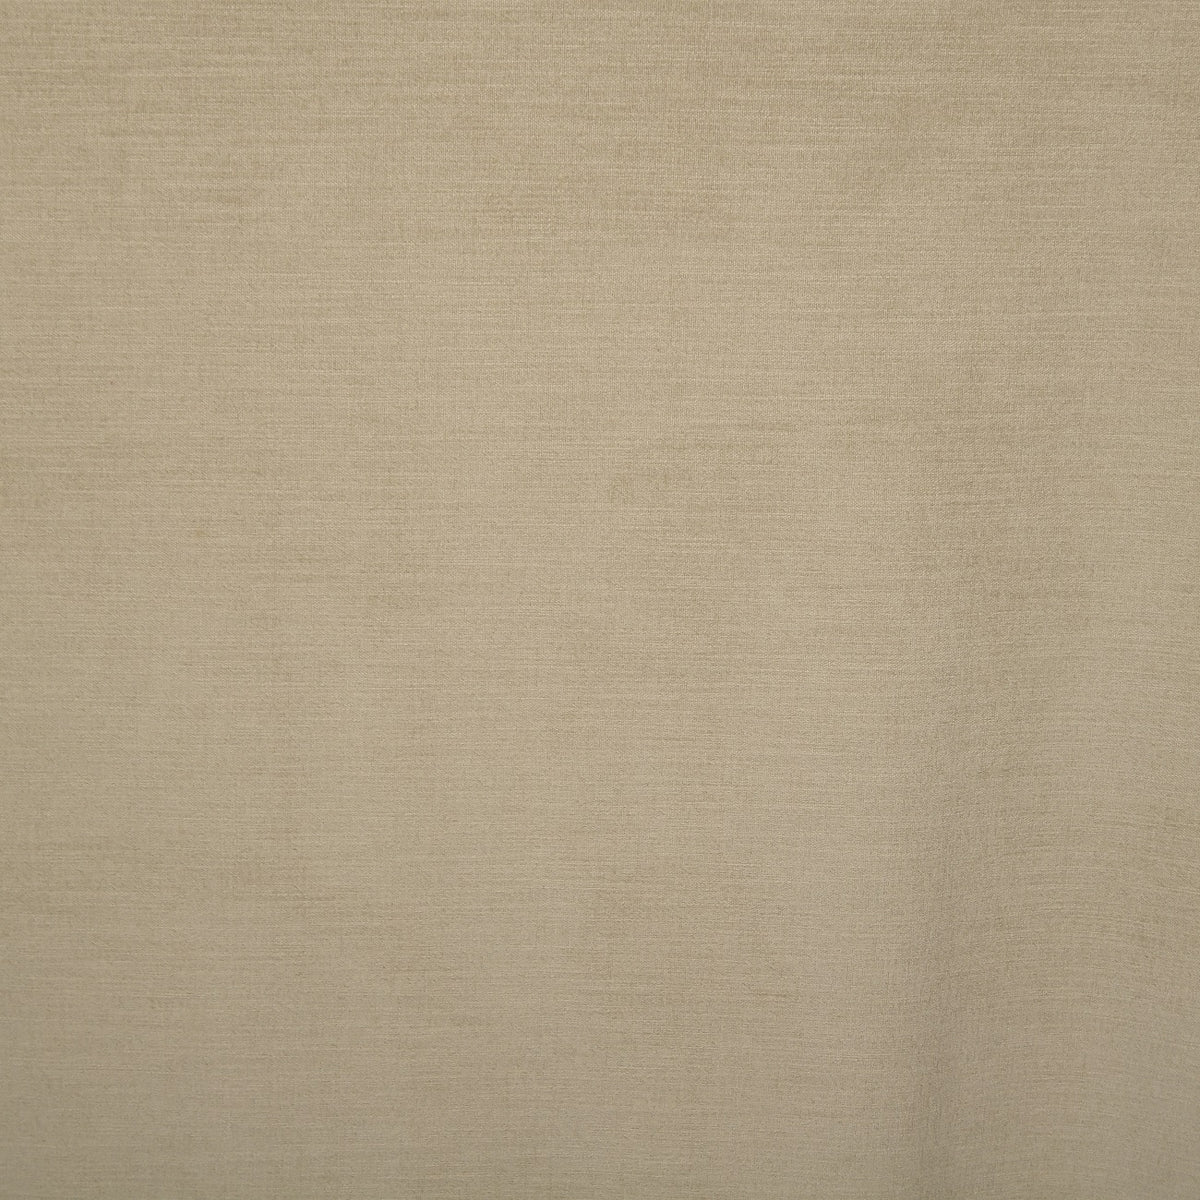 Night curtain gray white Yeti